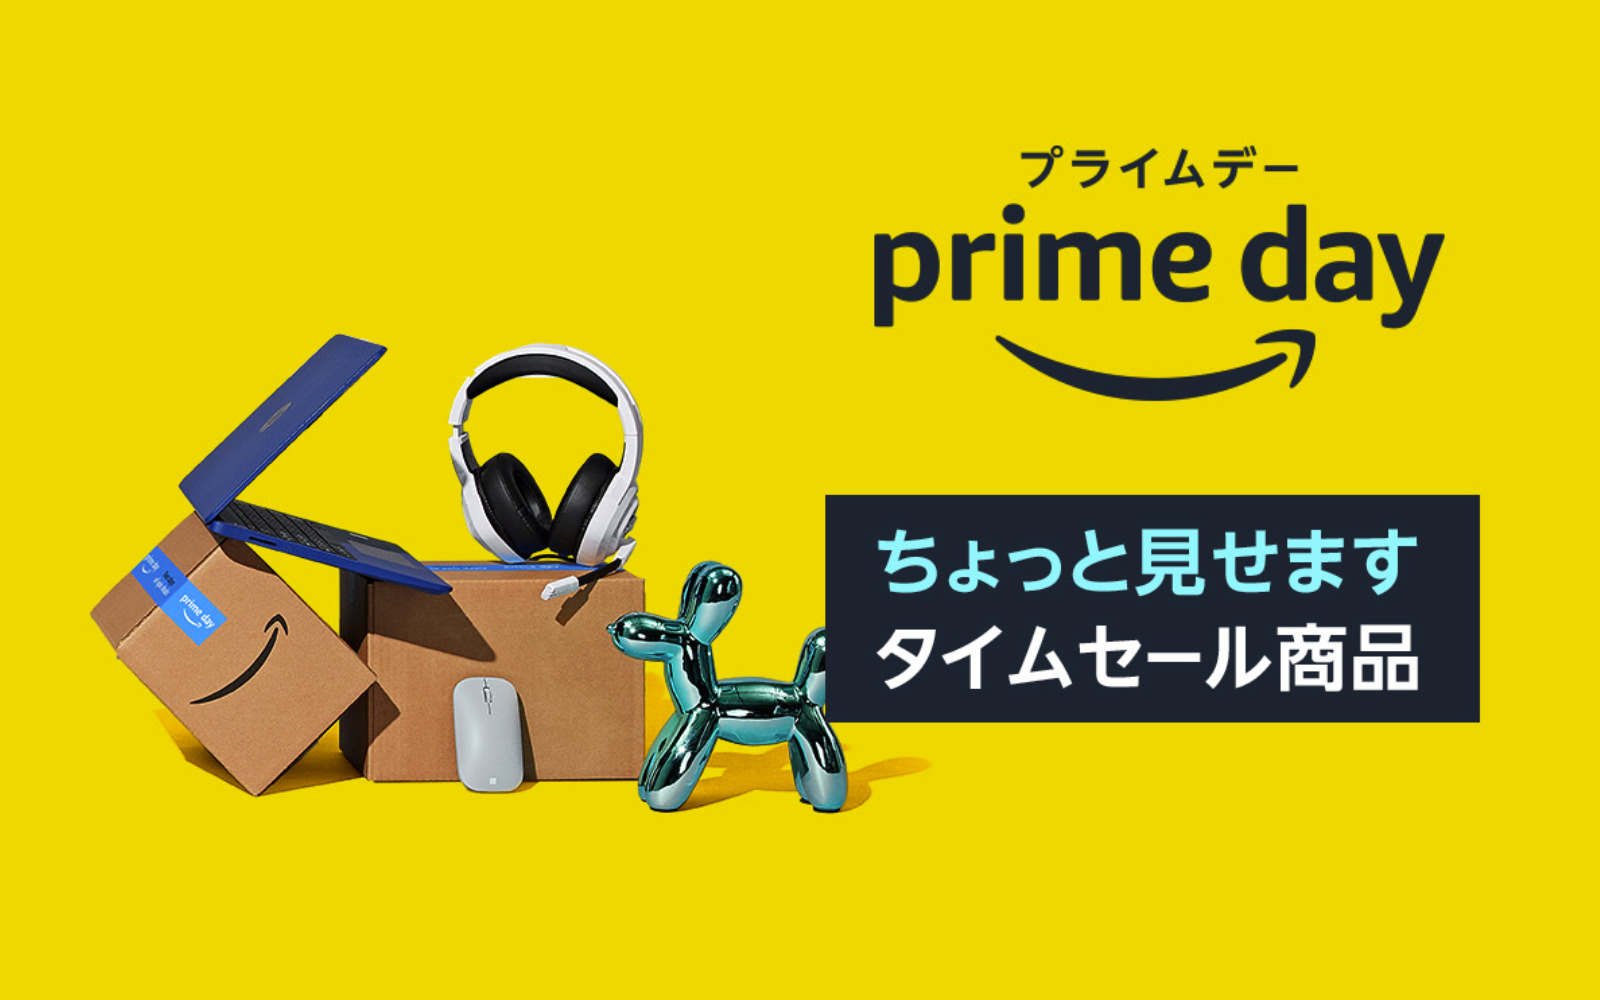 Amazon PrimeDay 2022 Sale Items